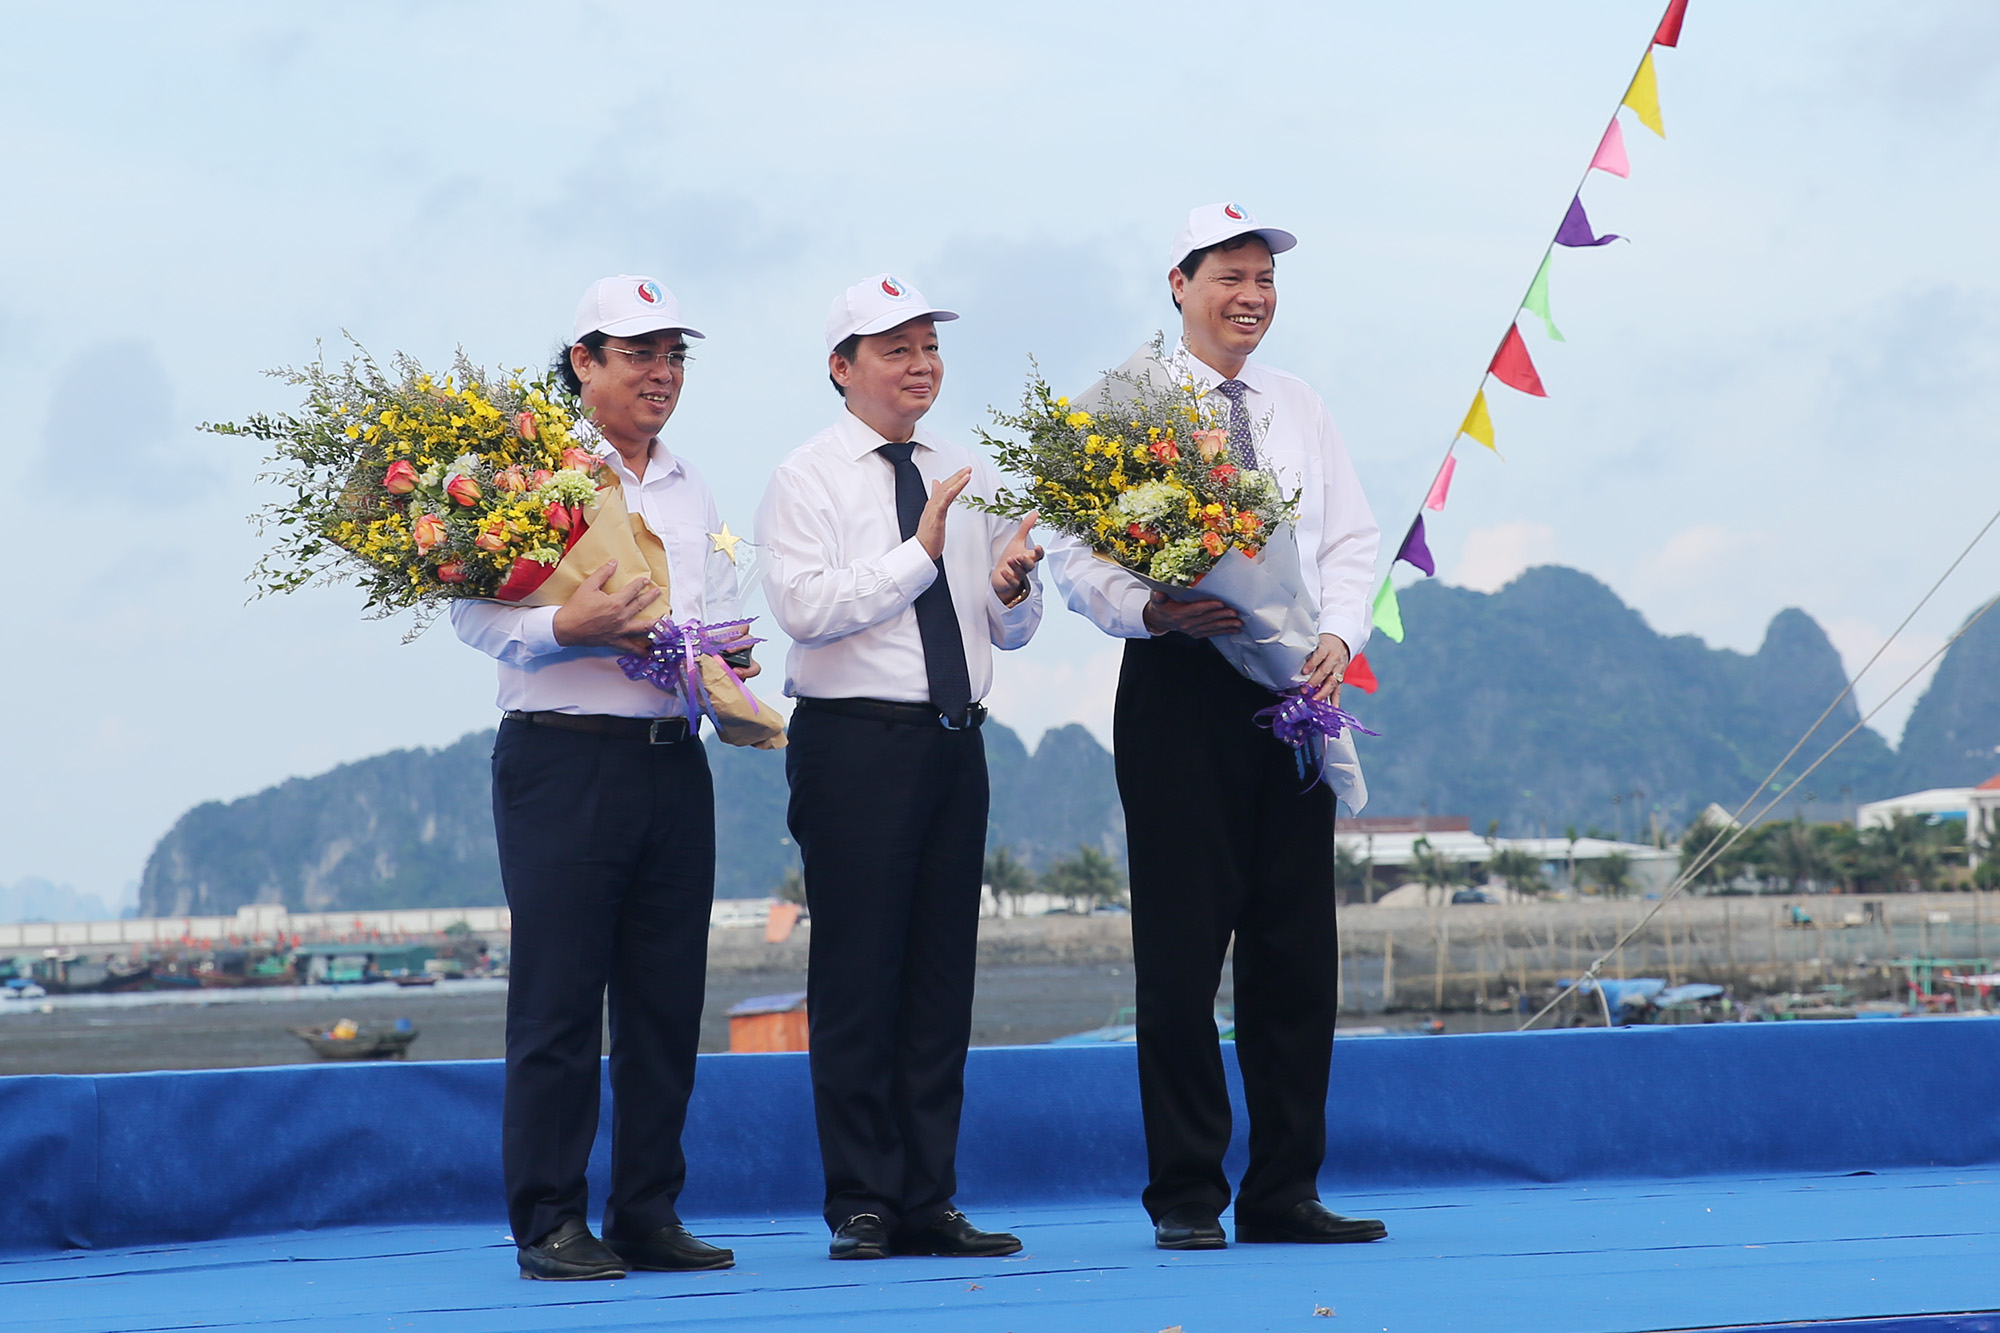 ồng chí Trần Hồng Hà, Bộ trưởng Bộ TN&MT, tặng hoa chúc mừng tỉnh Quảng Ninh và trao biểu tượng đăng cai tổ chức Tuần lễ Biển và hải đảo Việt Nam năm 2019 cho tỉnh Bạc Liêu.